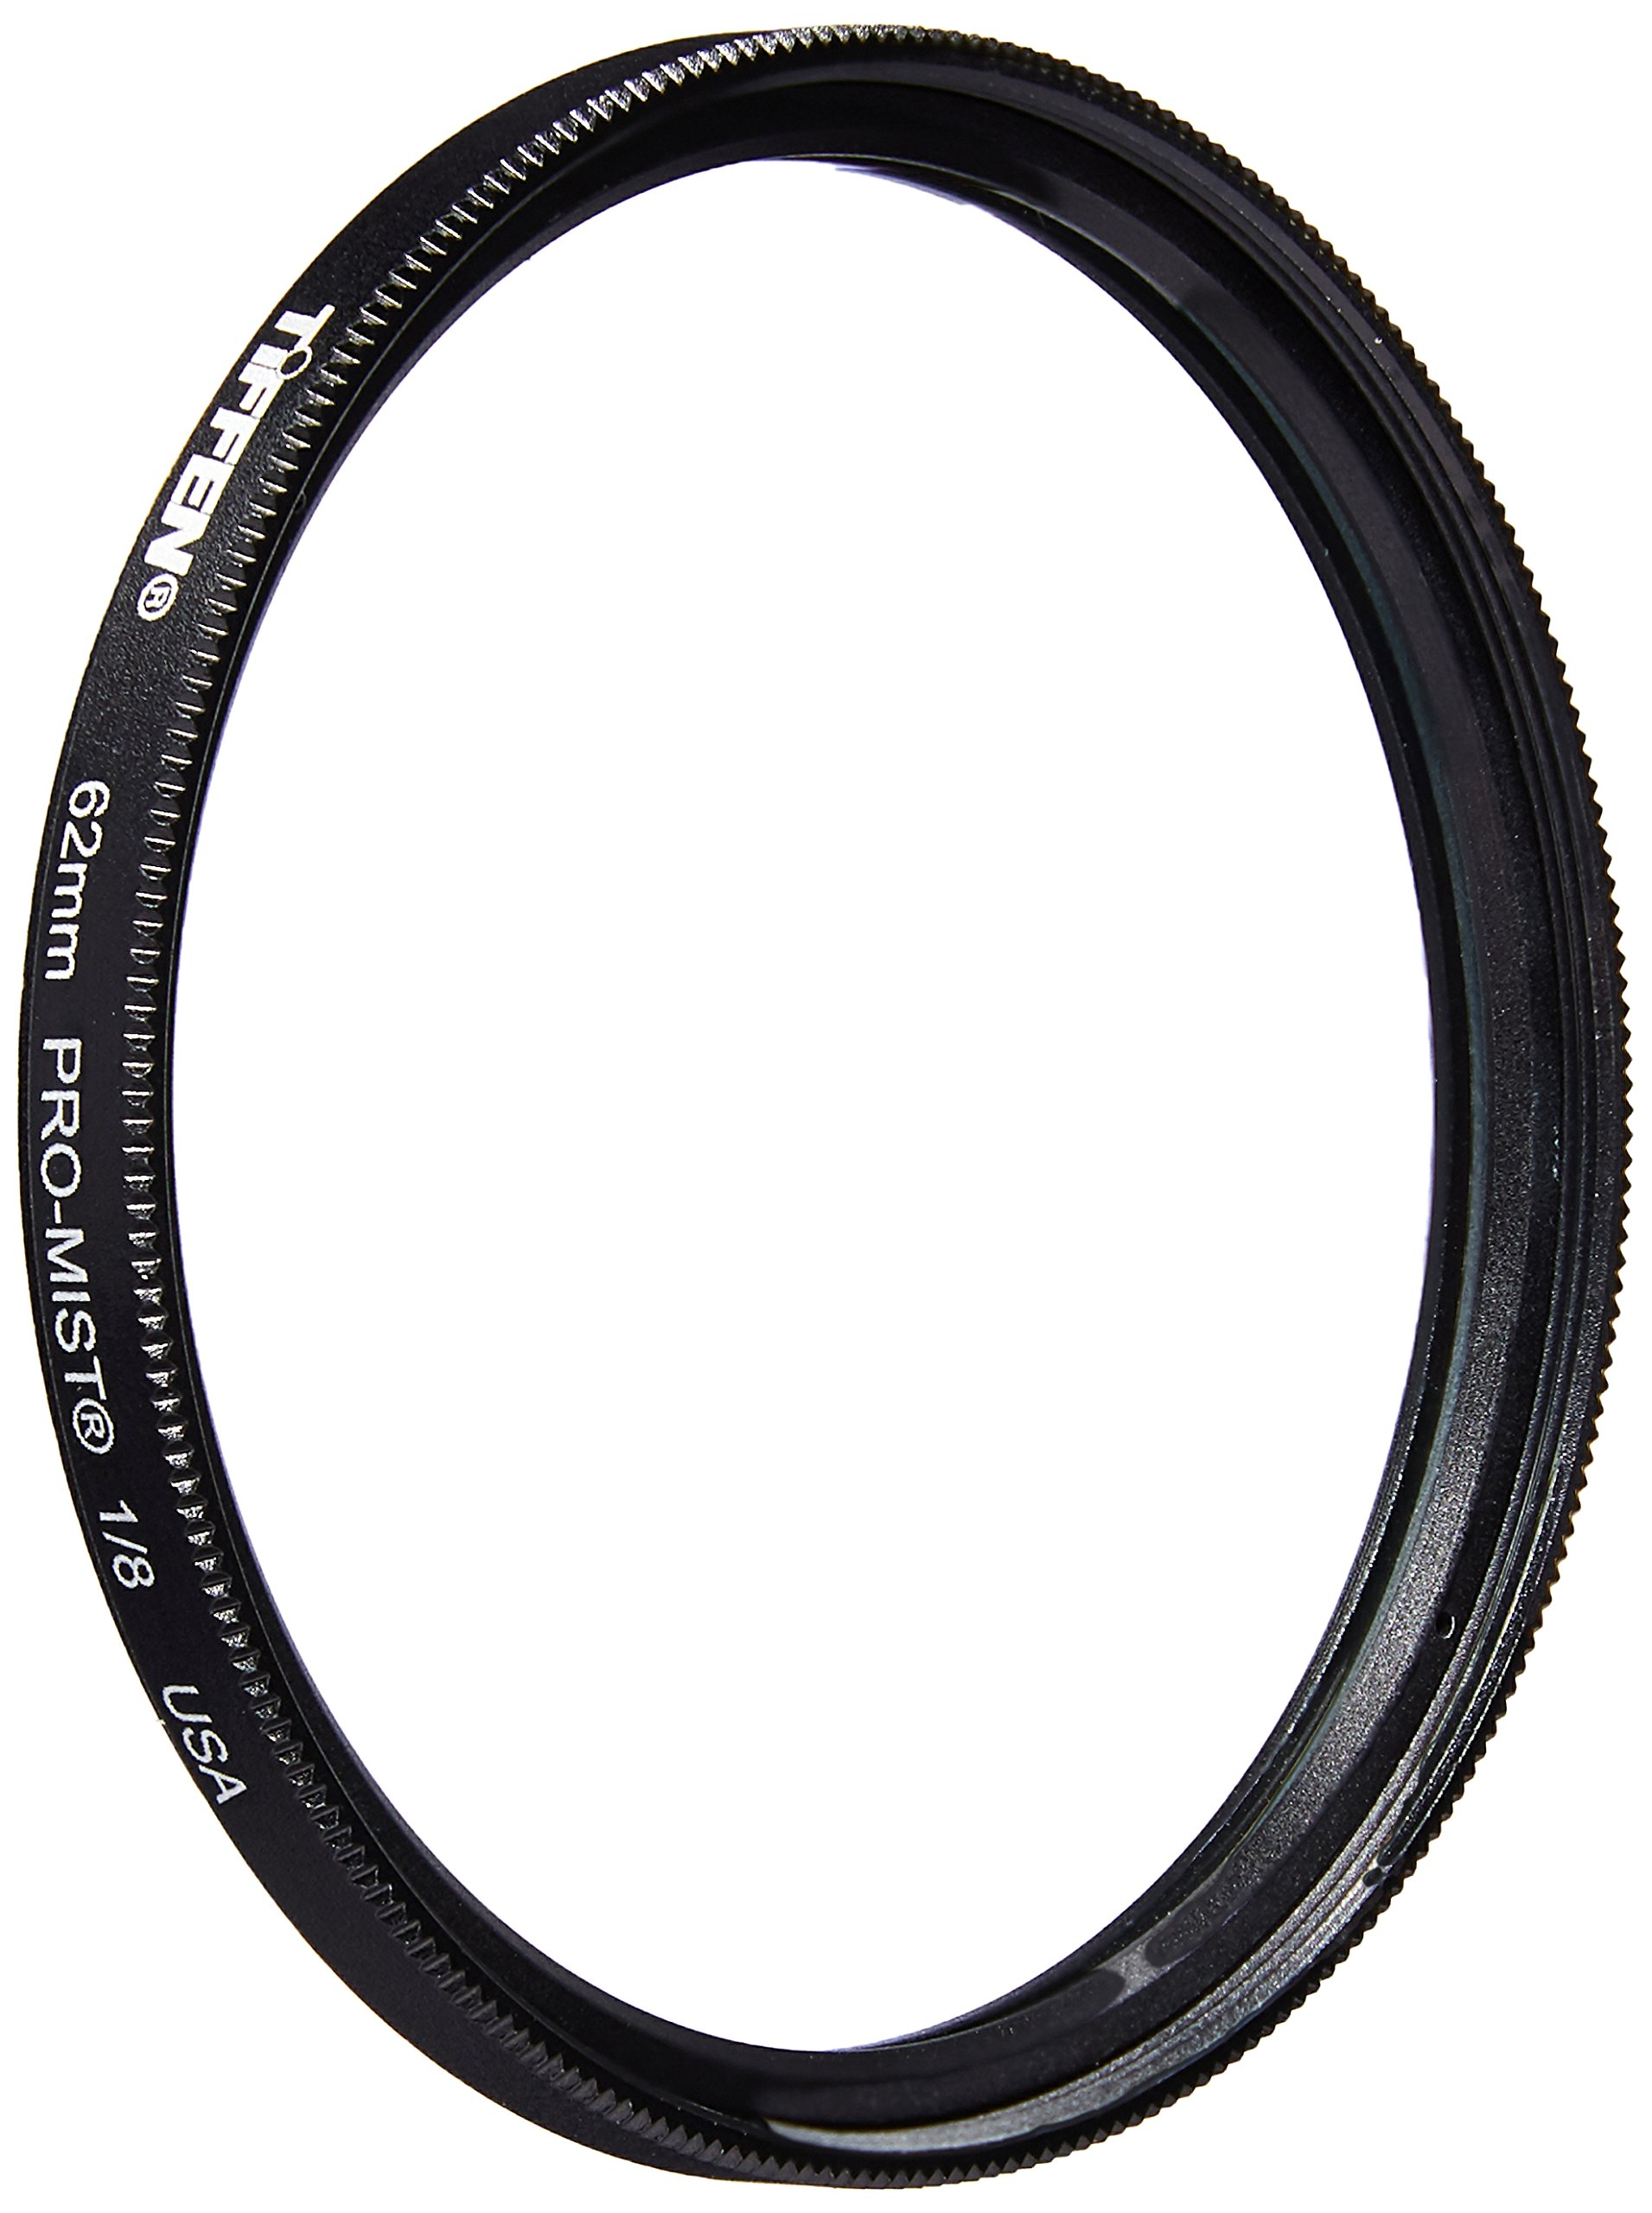 Tiffen 62PM18 62mm Pro-Mist 1/8 Filter